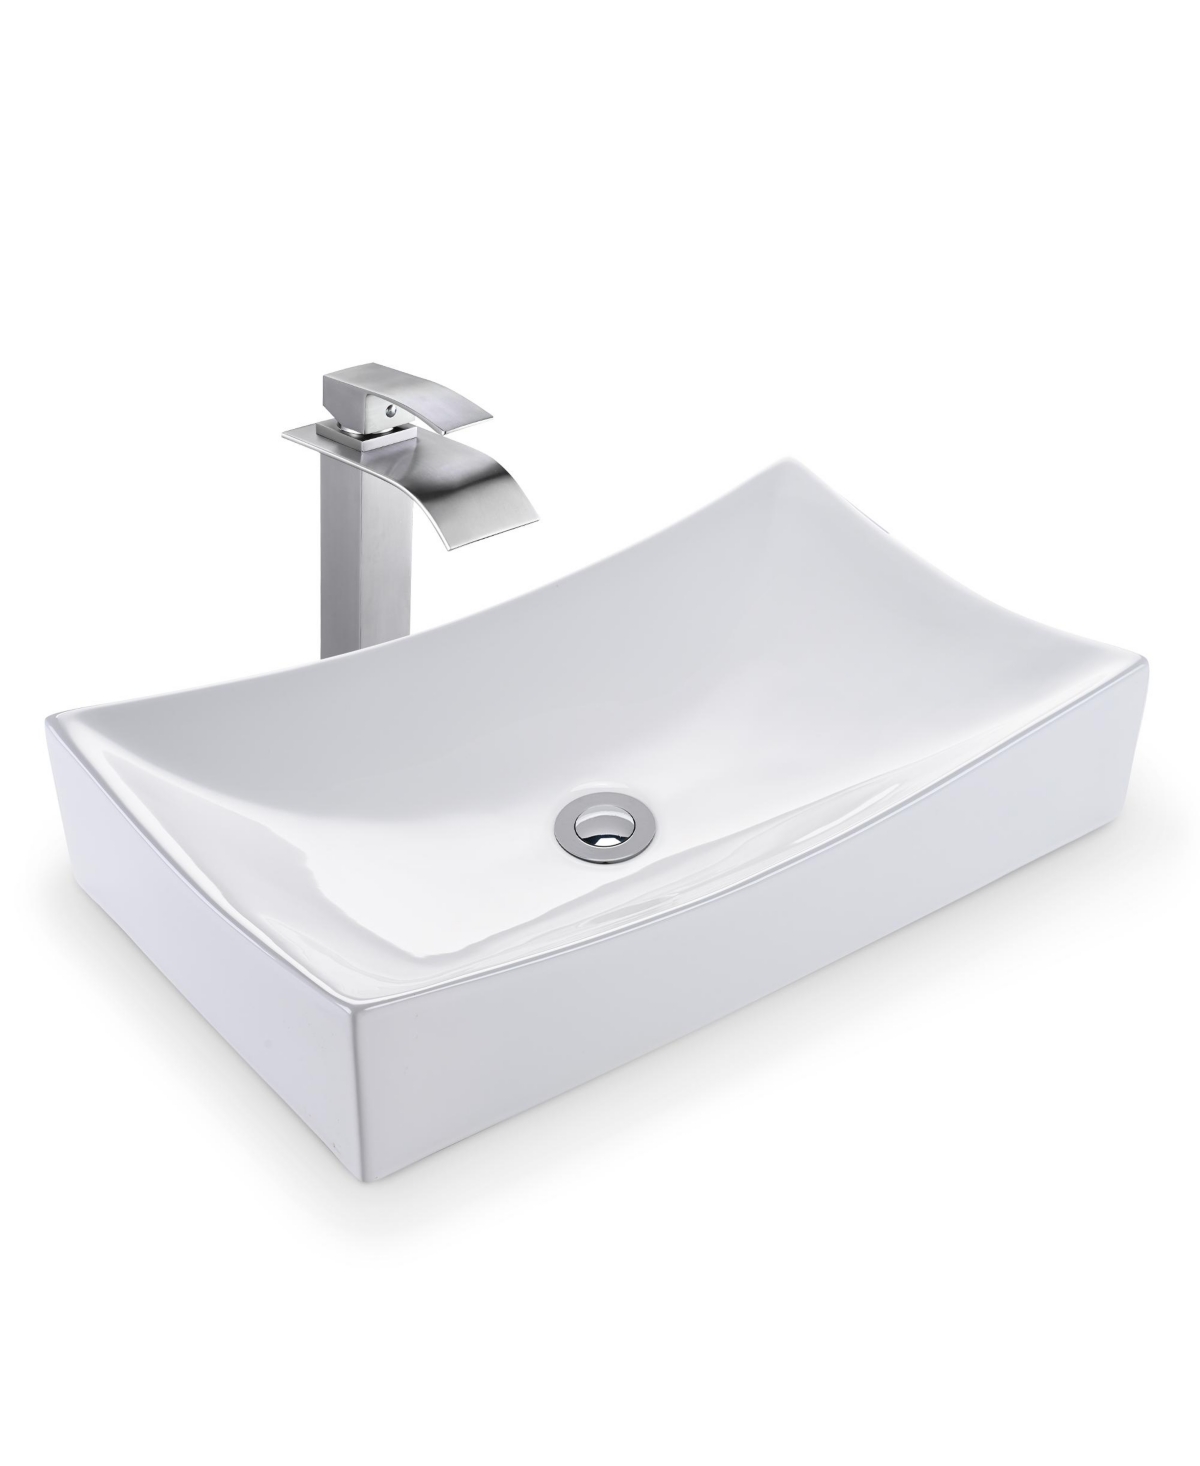 Rectangle Countertop Ceramic Vessel Sink Kit Single Handle Faucet - Natural